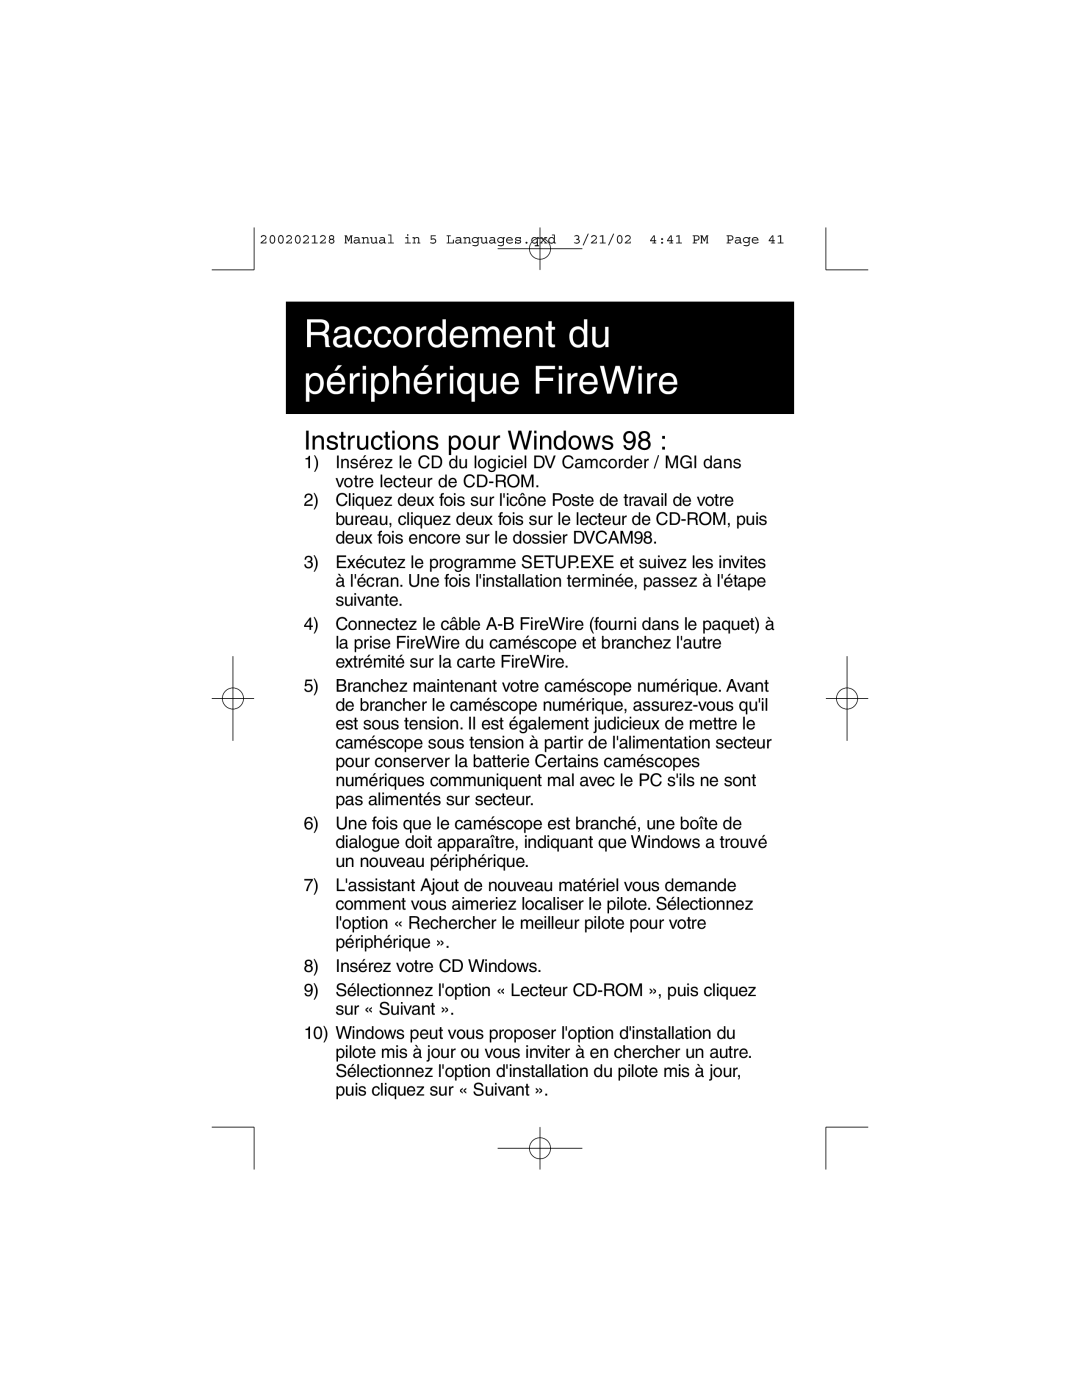 Tripp Lite F200-003-R user manual Instructions pour Windows, Raccordement du périphérique FireWire 